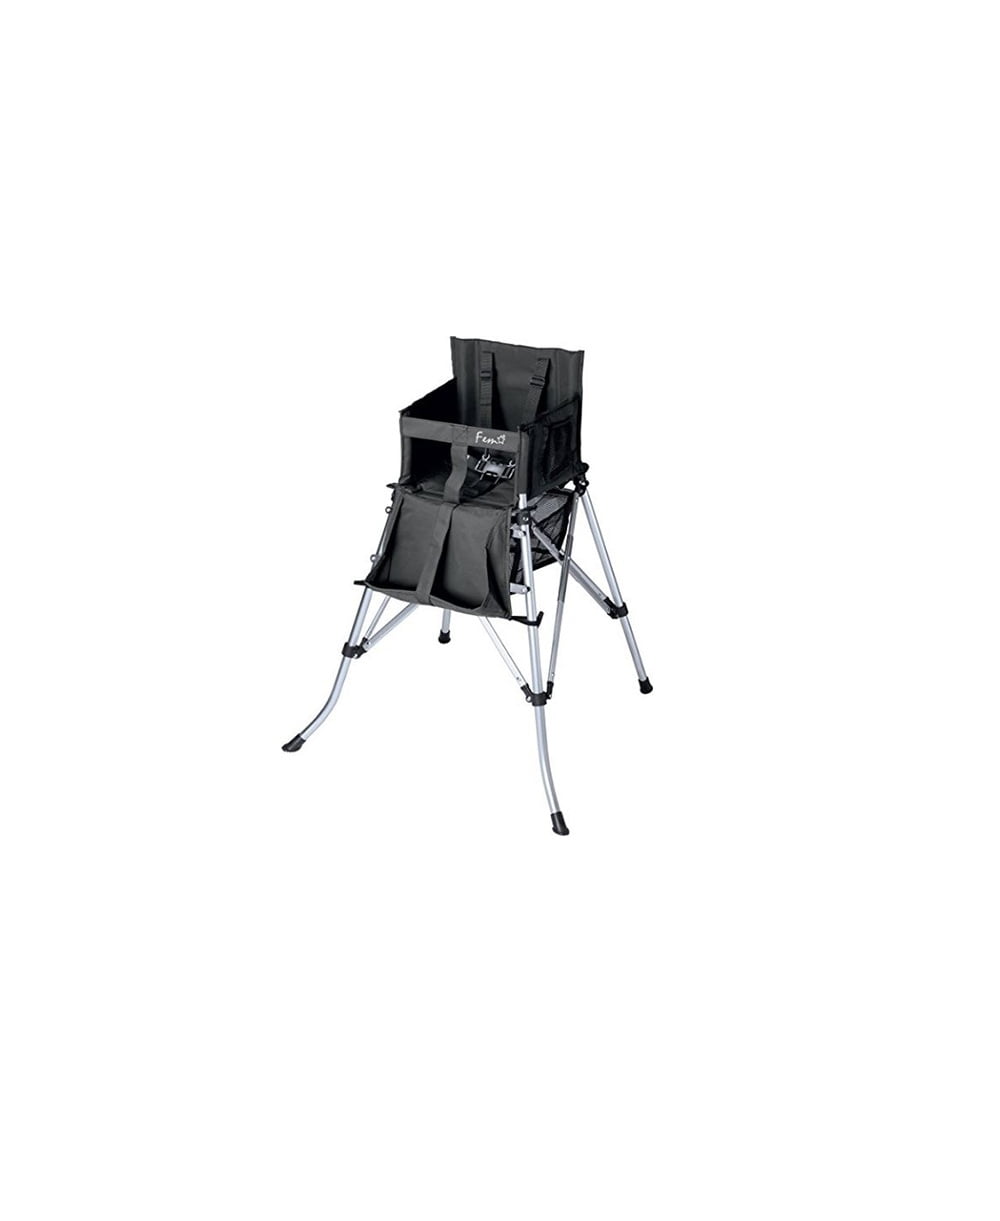 portable high chair walmart